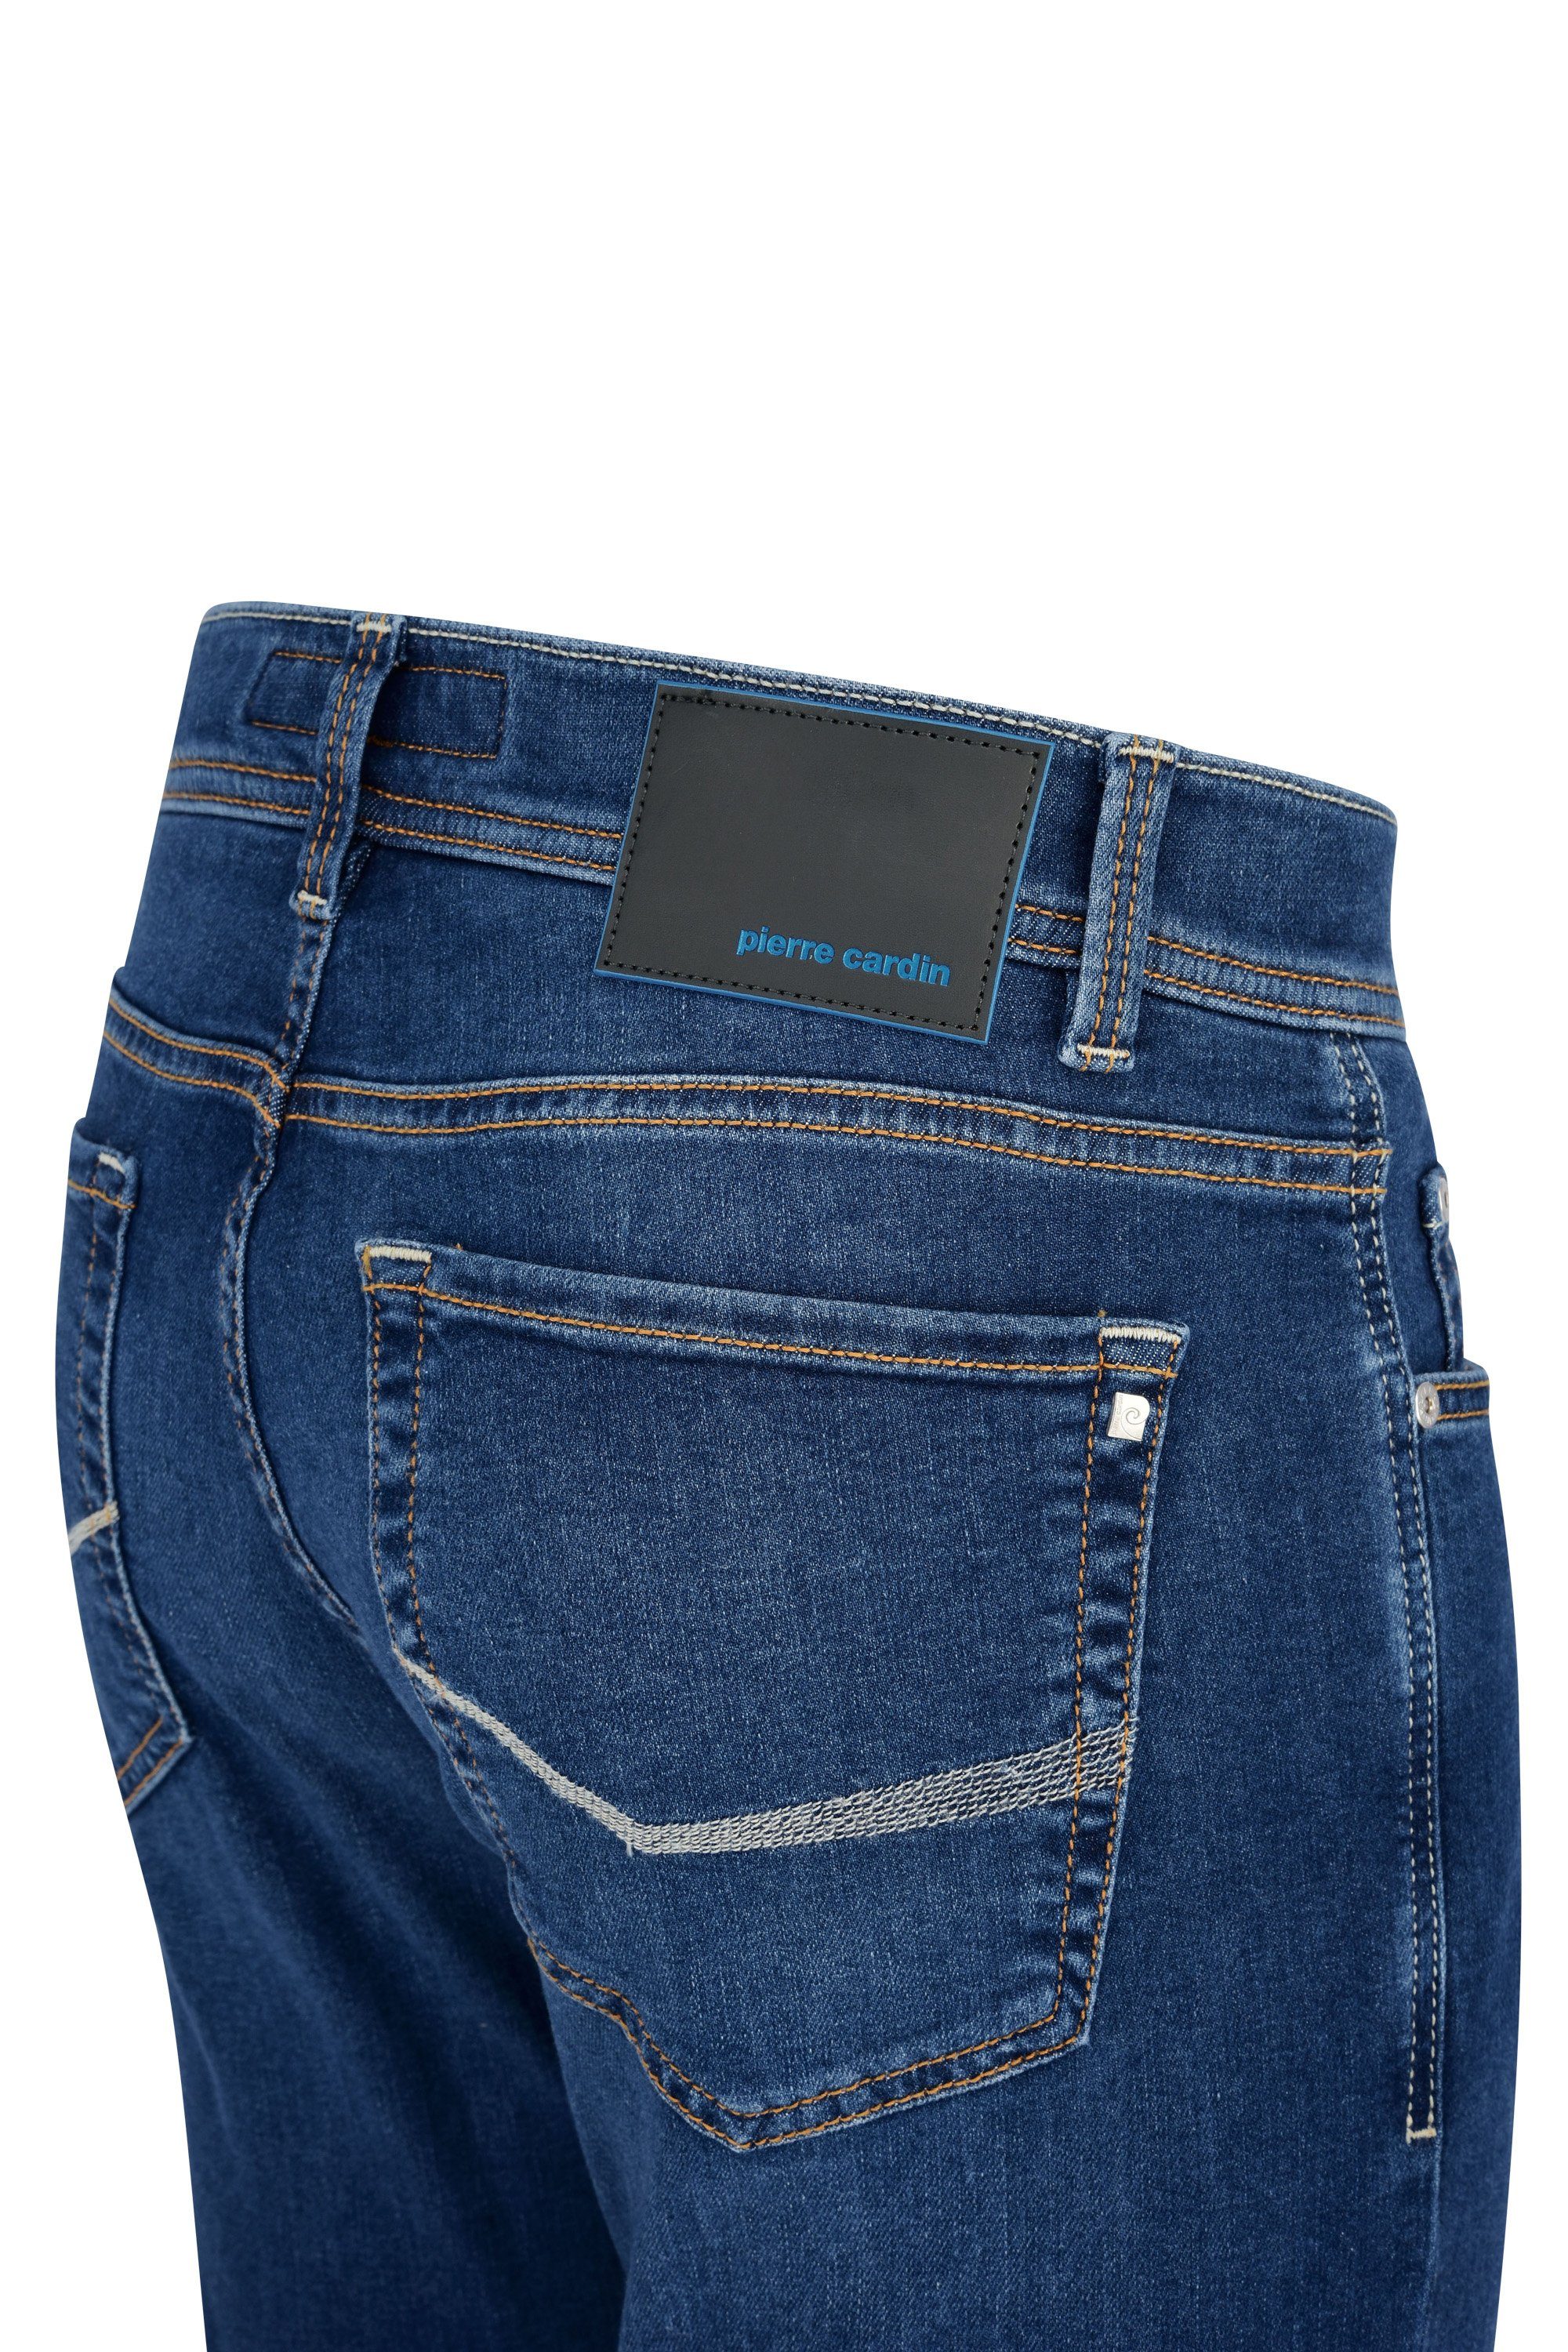 8880.98 Cardin Pierre LYON used 3451 CARDIN 5-Pocket-Jeans blue PIERRE washed FUTUREFLEX